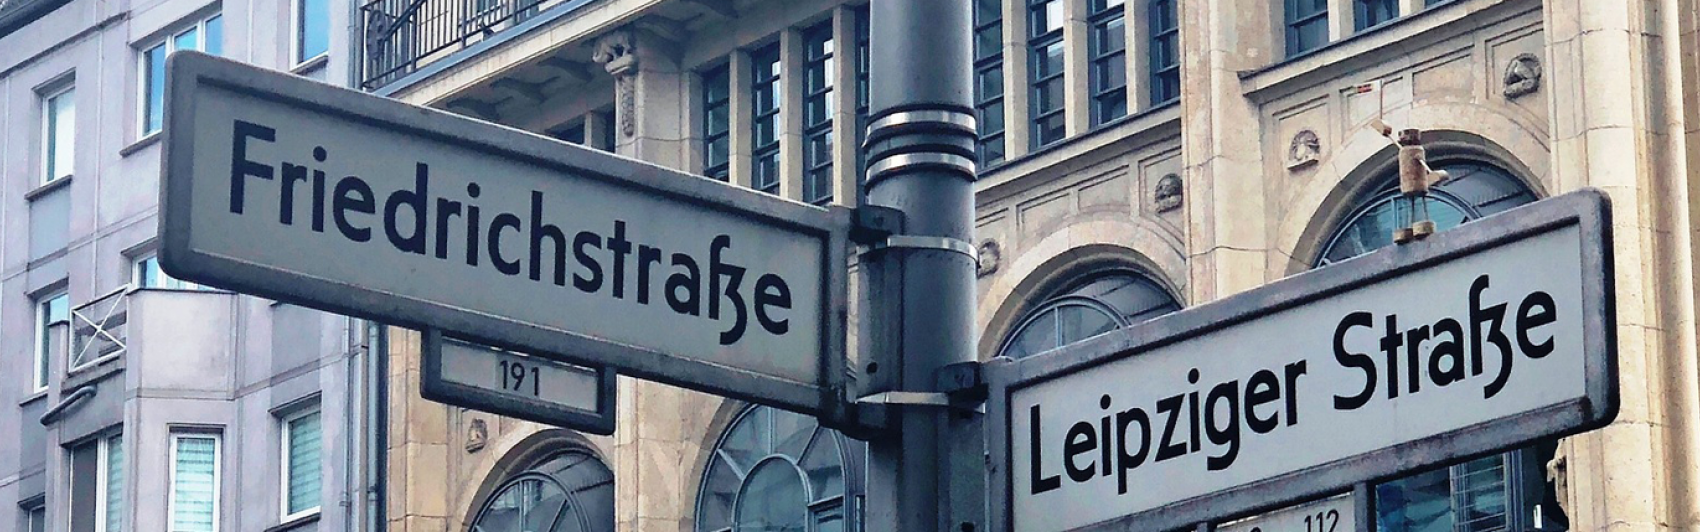 Straßenschild, Friedrichstraße, Ecke, Leipziger Straße. Berlin 